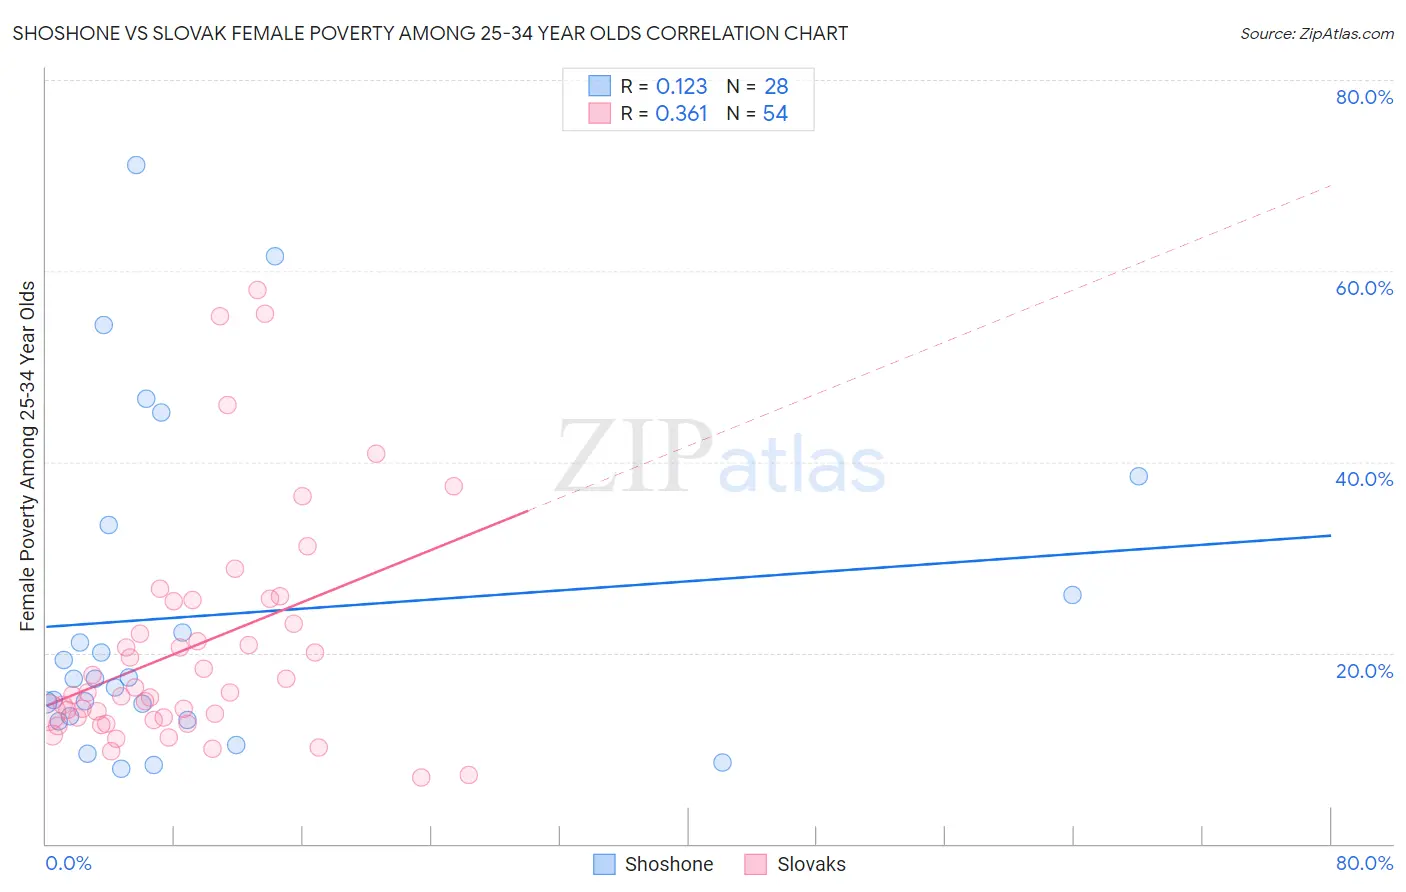 Shoshone vs Slovak Female Poverty Among 25-34 Year Olds